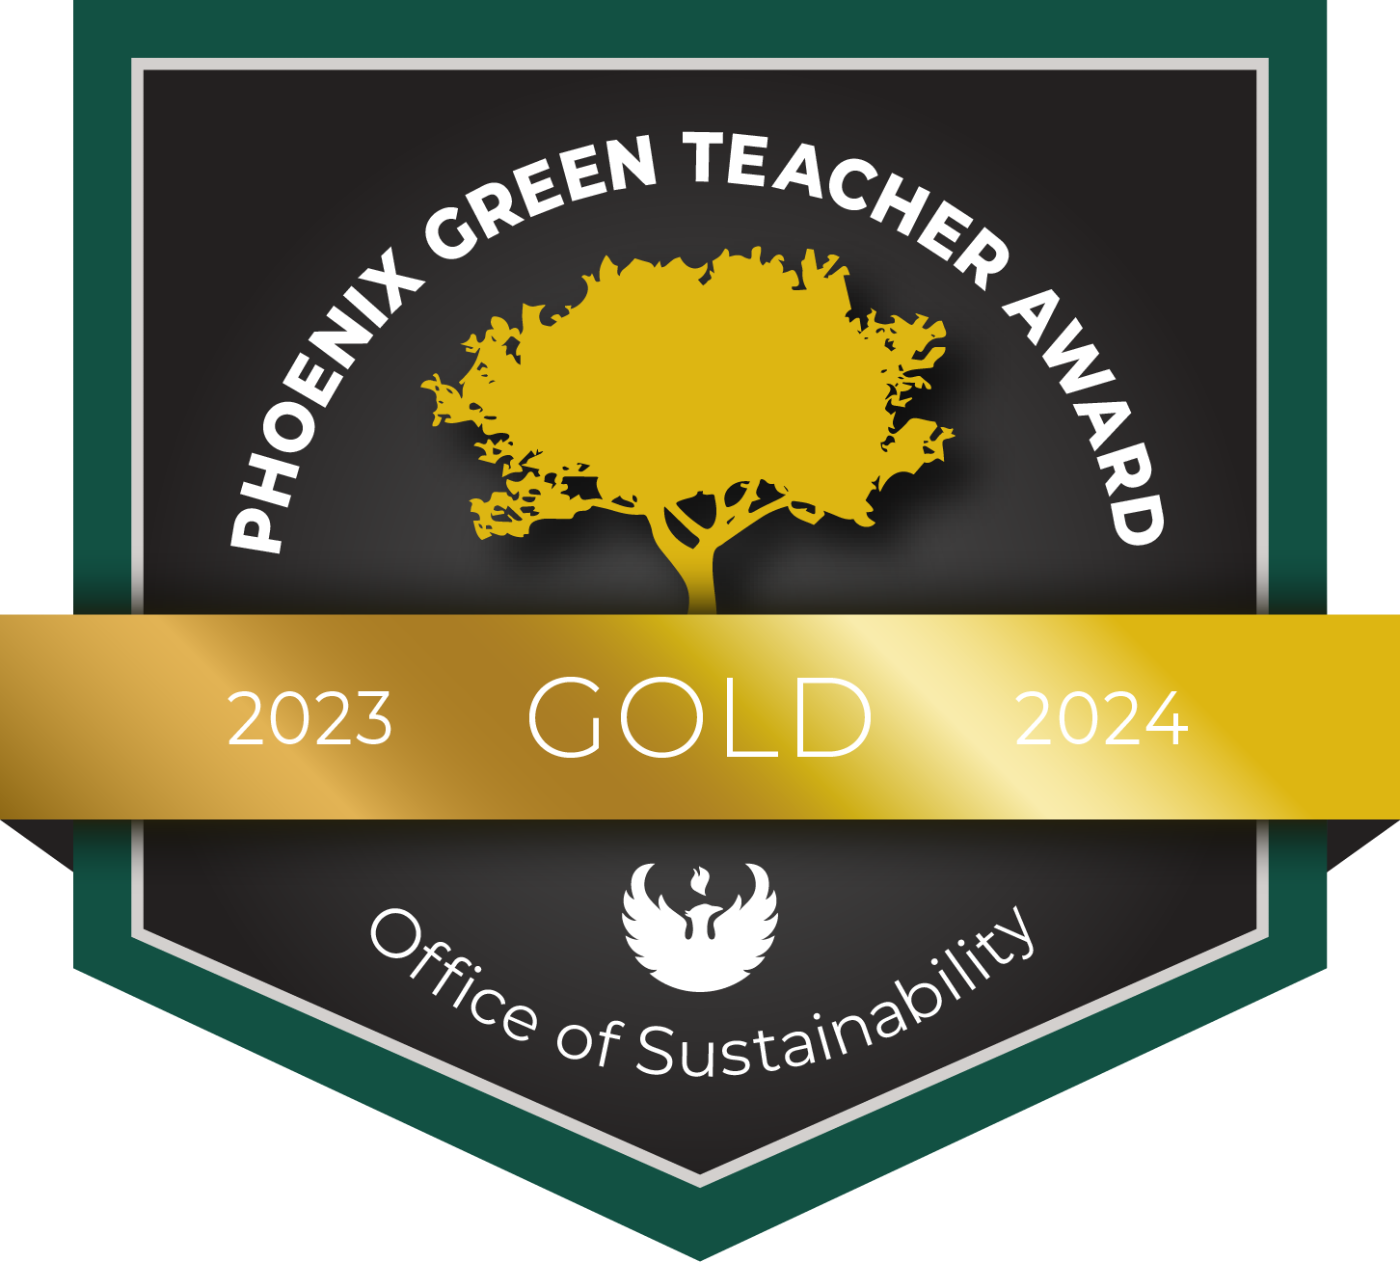 Gold Teacher Award